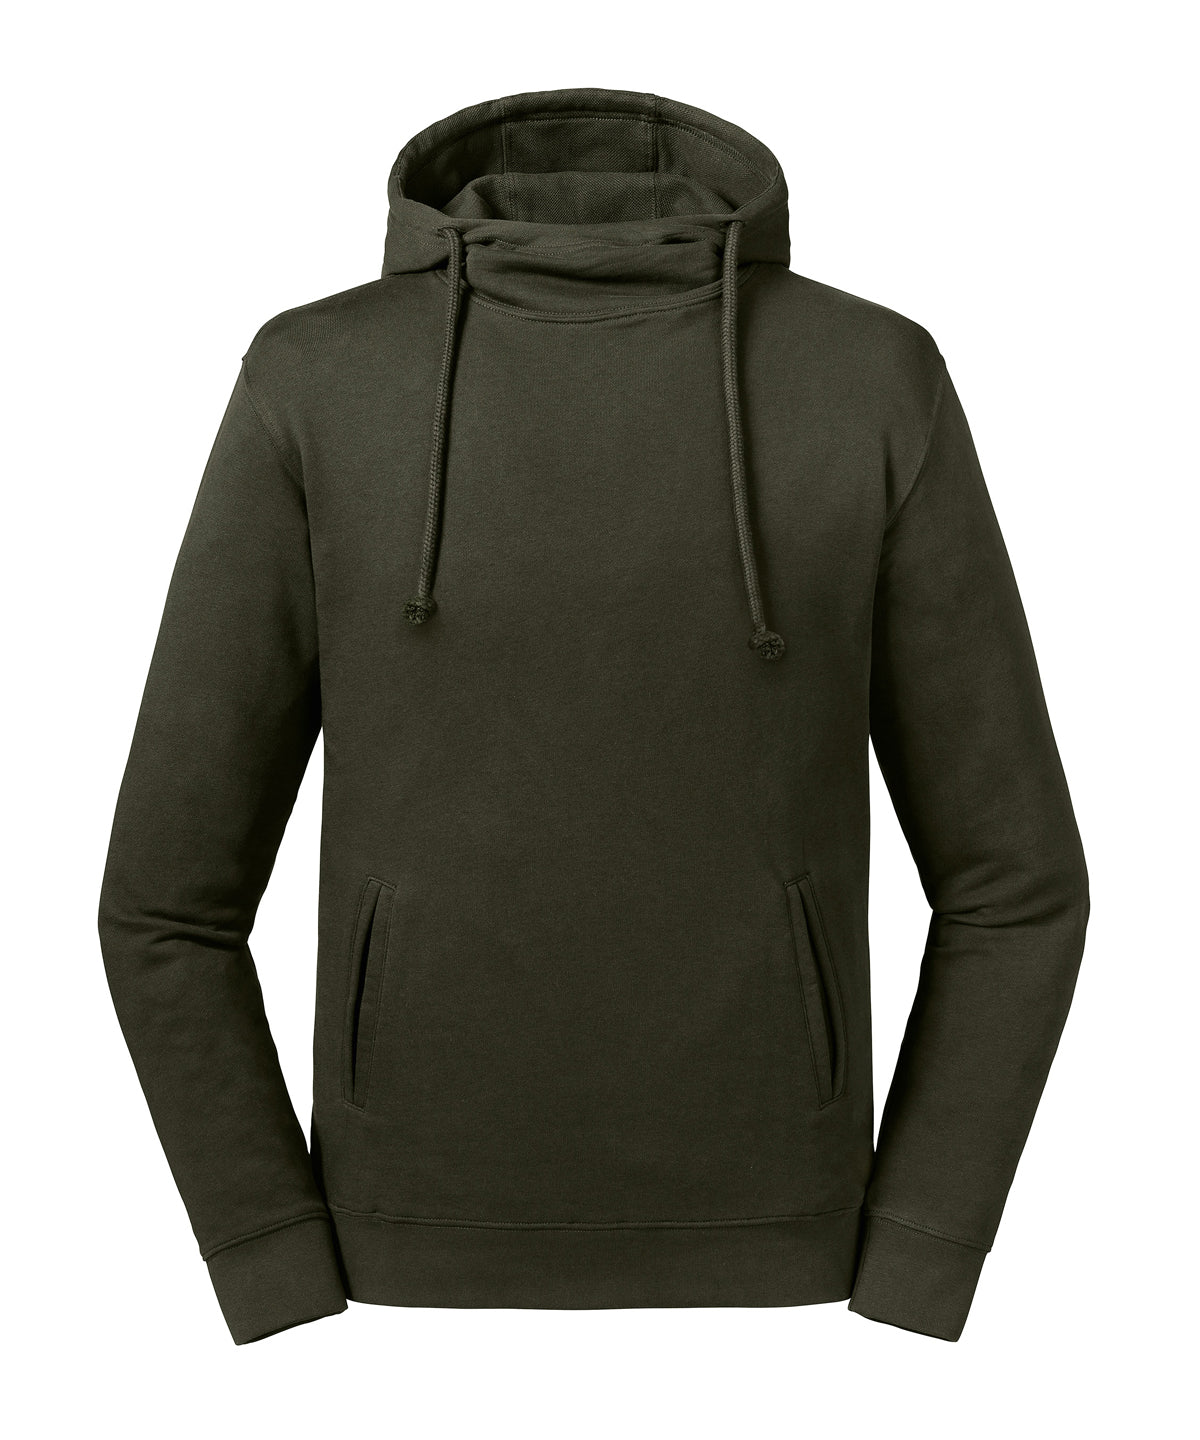 Hettupeysur - Pure Organic High Collar Hooded Sweatshirt